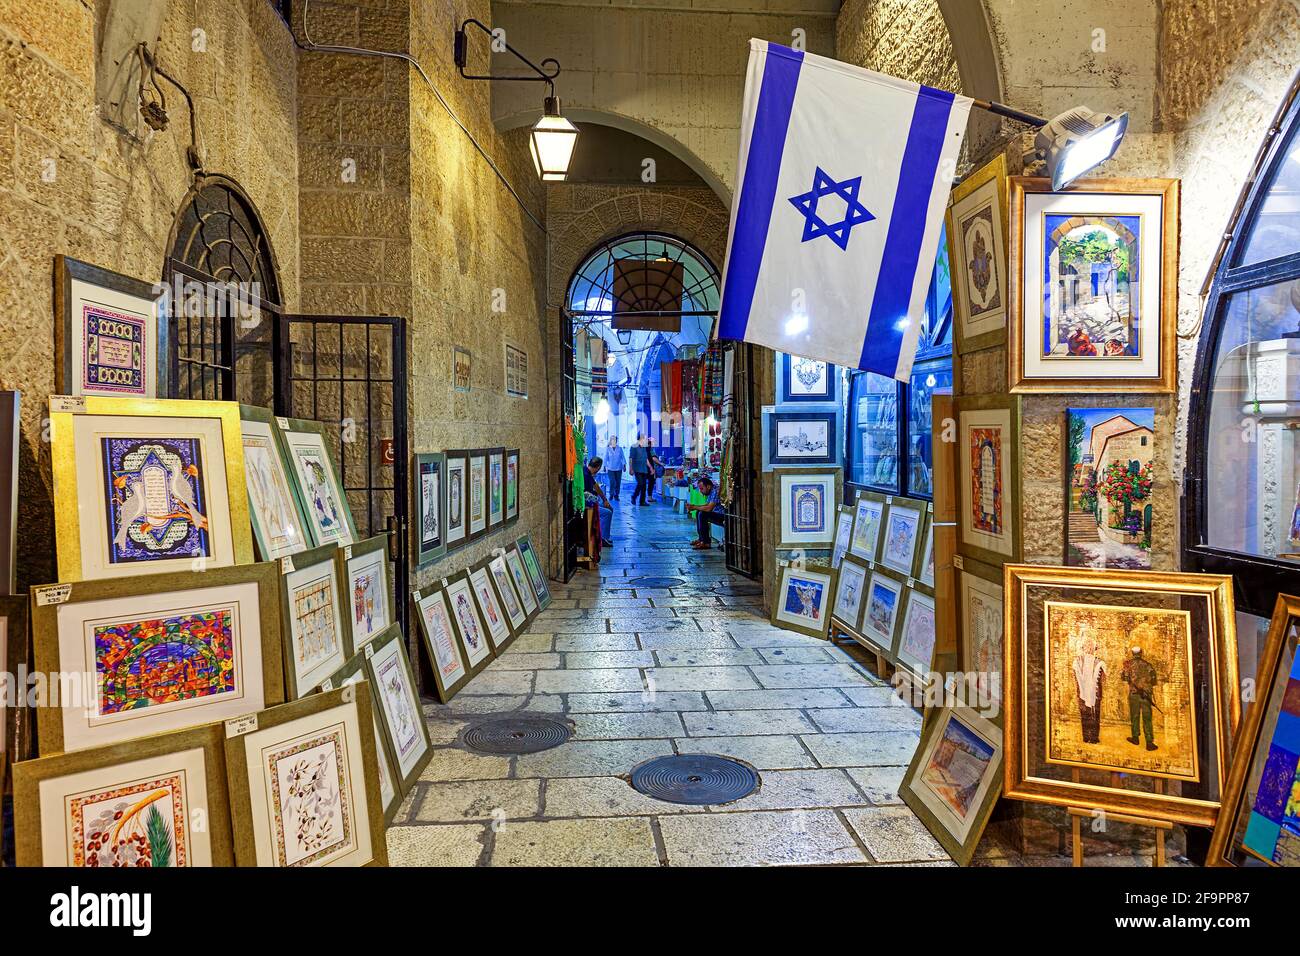 Dipinti tradizionali judaica in vendita all'interno della galleria d'arte nella città vecchia di Gerusalemme, Israele. Foto Stock